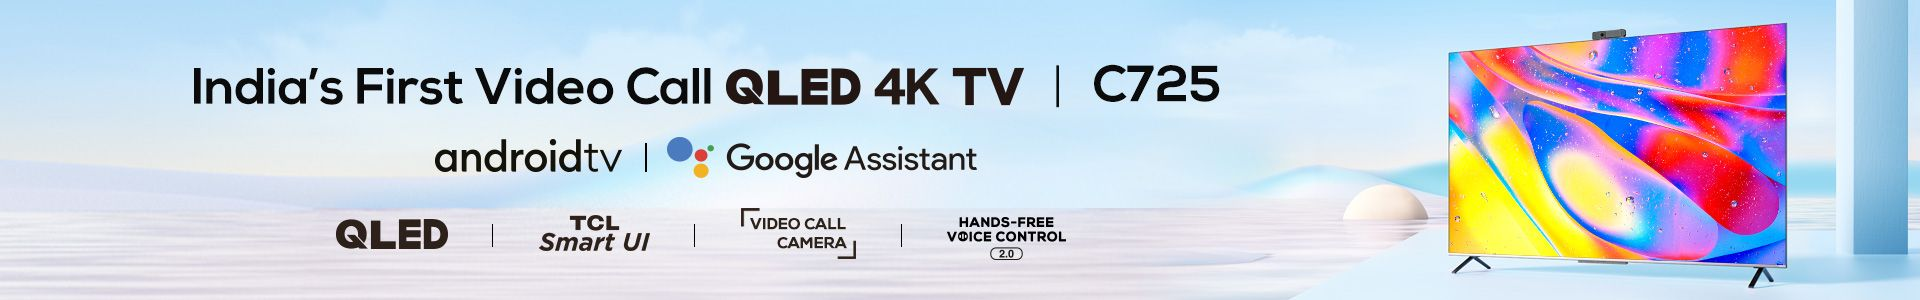 QLED 4K TV C725